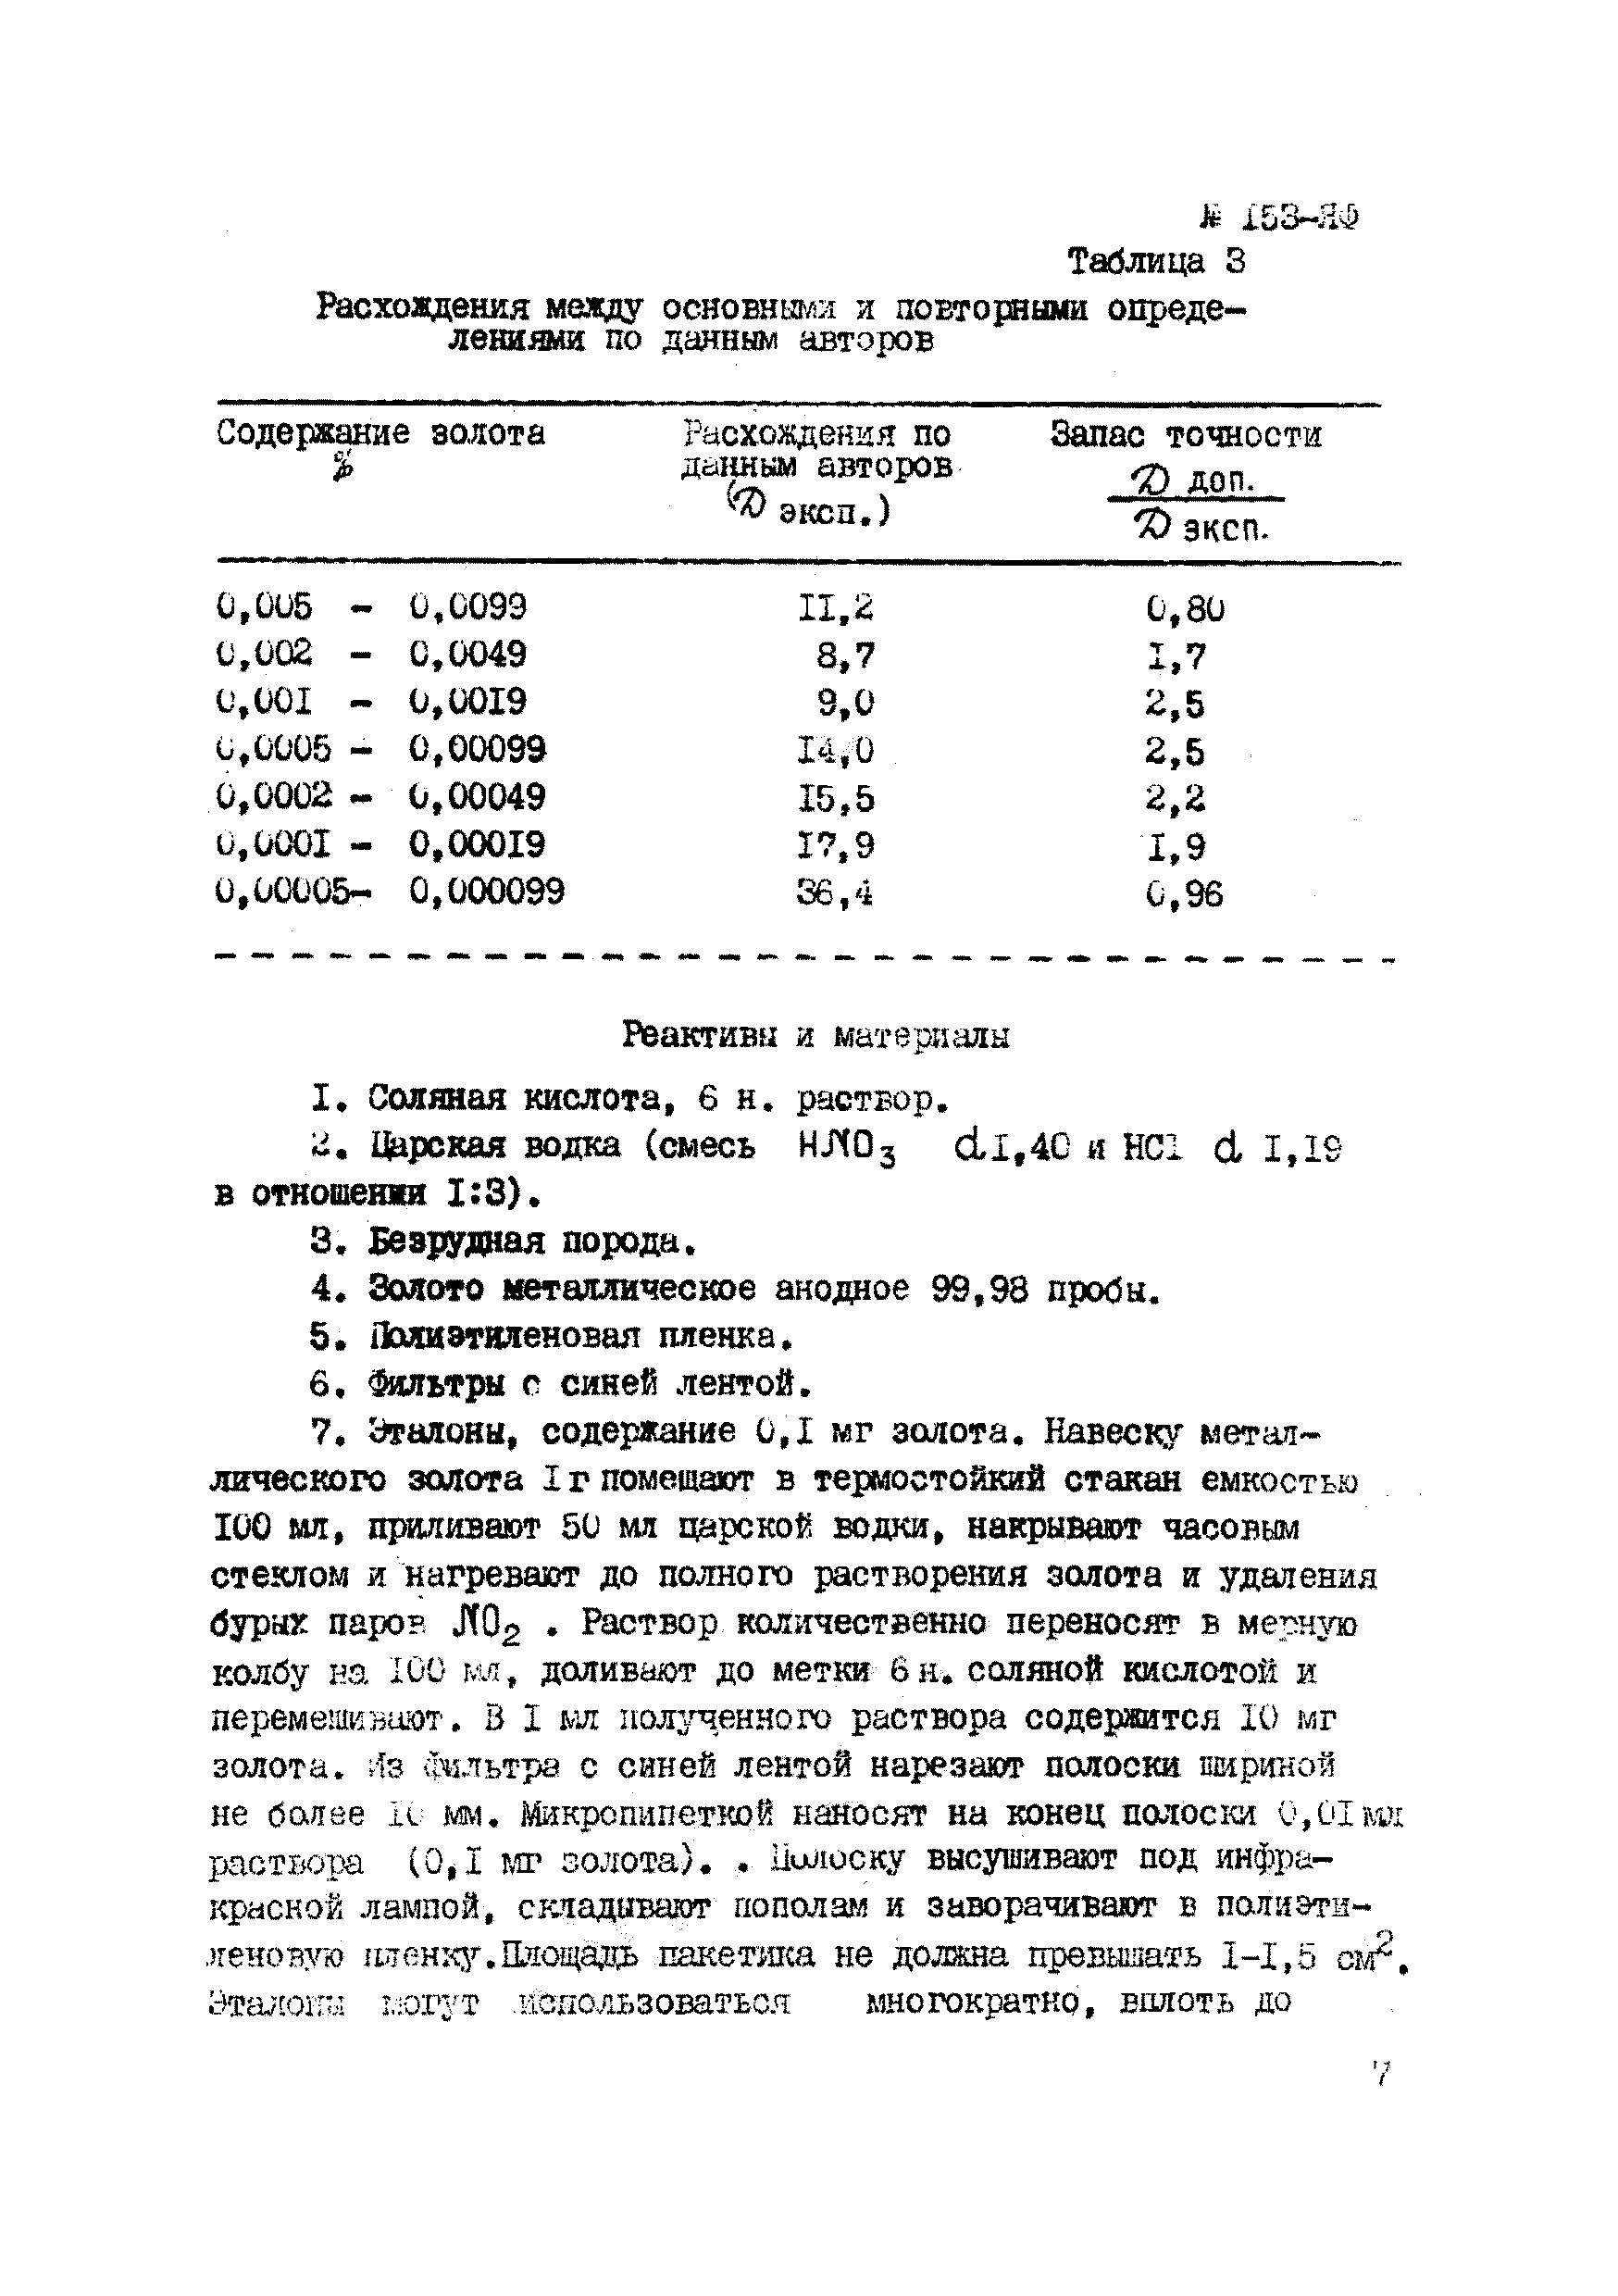 Инструкция НСАМ 153-ЯФ